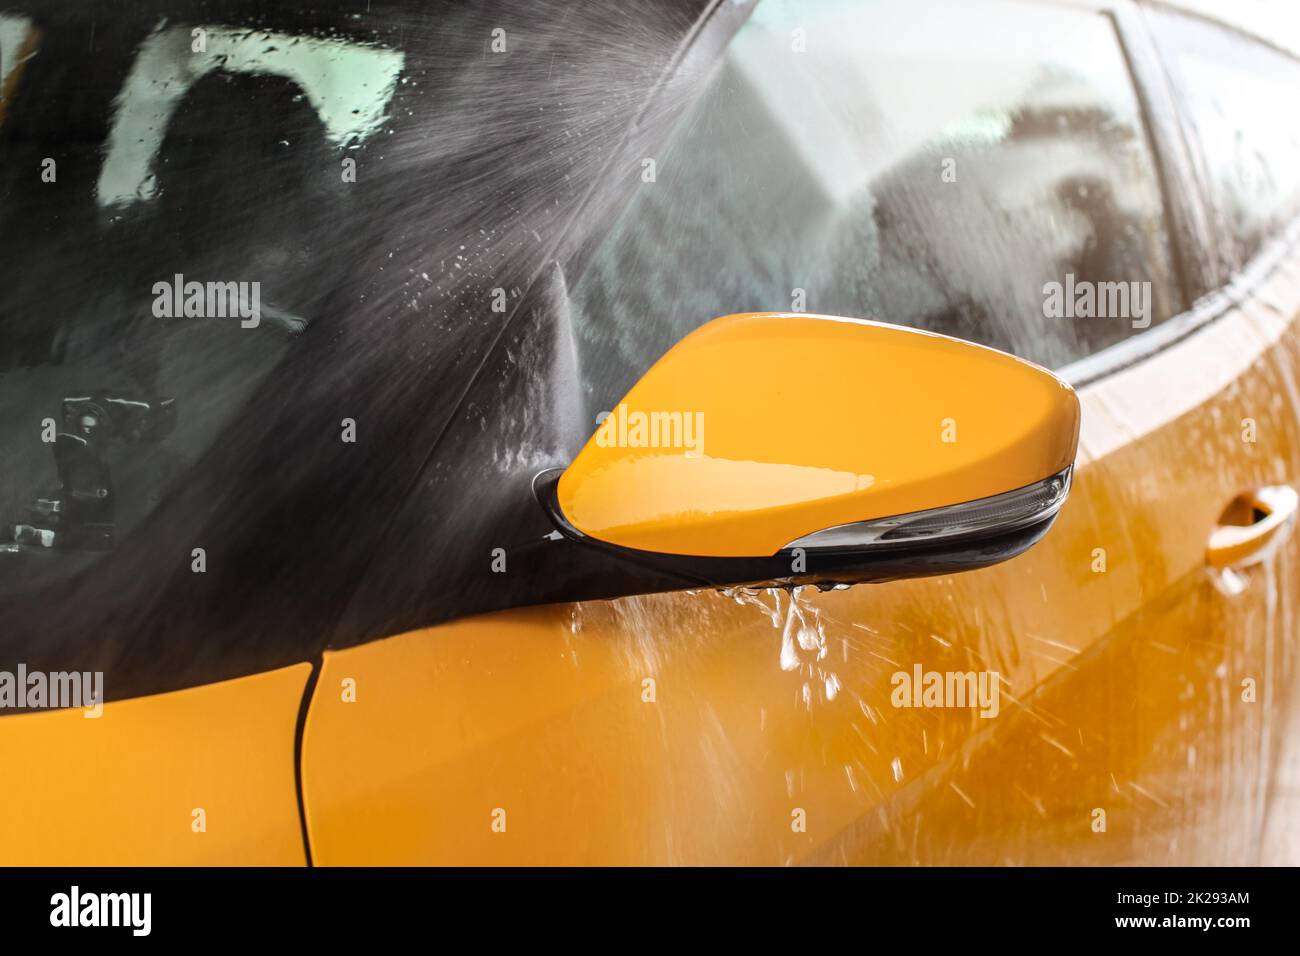 Seite Spiegel der gelben Auto in Self-Service-Autowaschanlage gewaschen wird, Wasser sprühen mit hohem Druck, Tropfen fliegen herum. Stockfoto